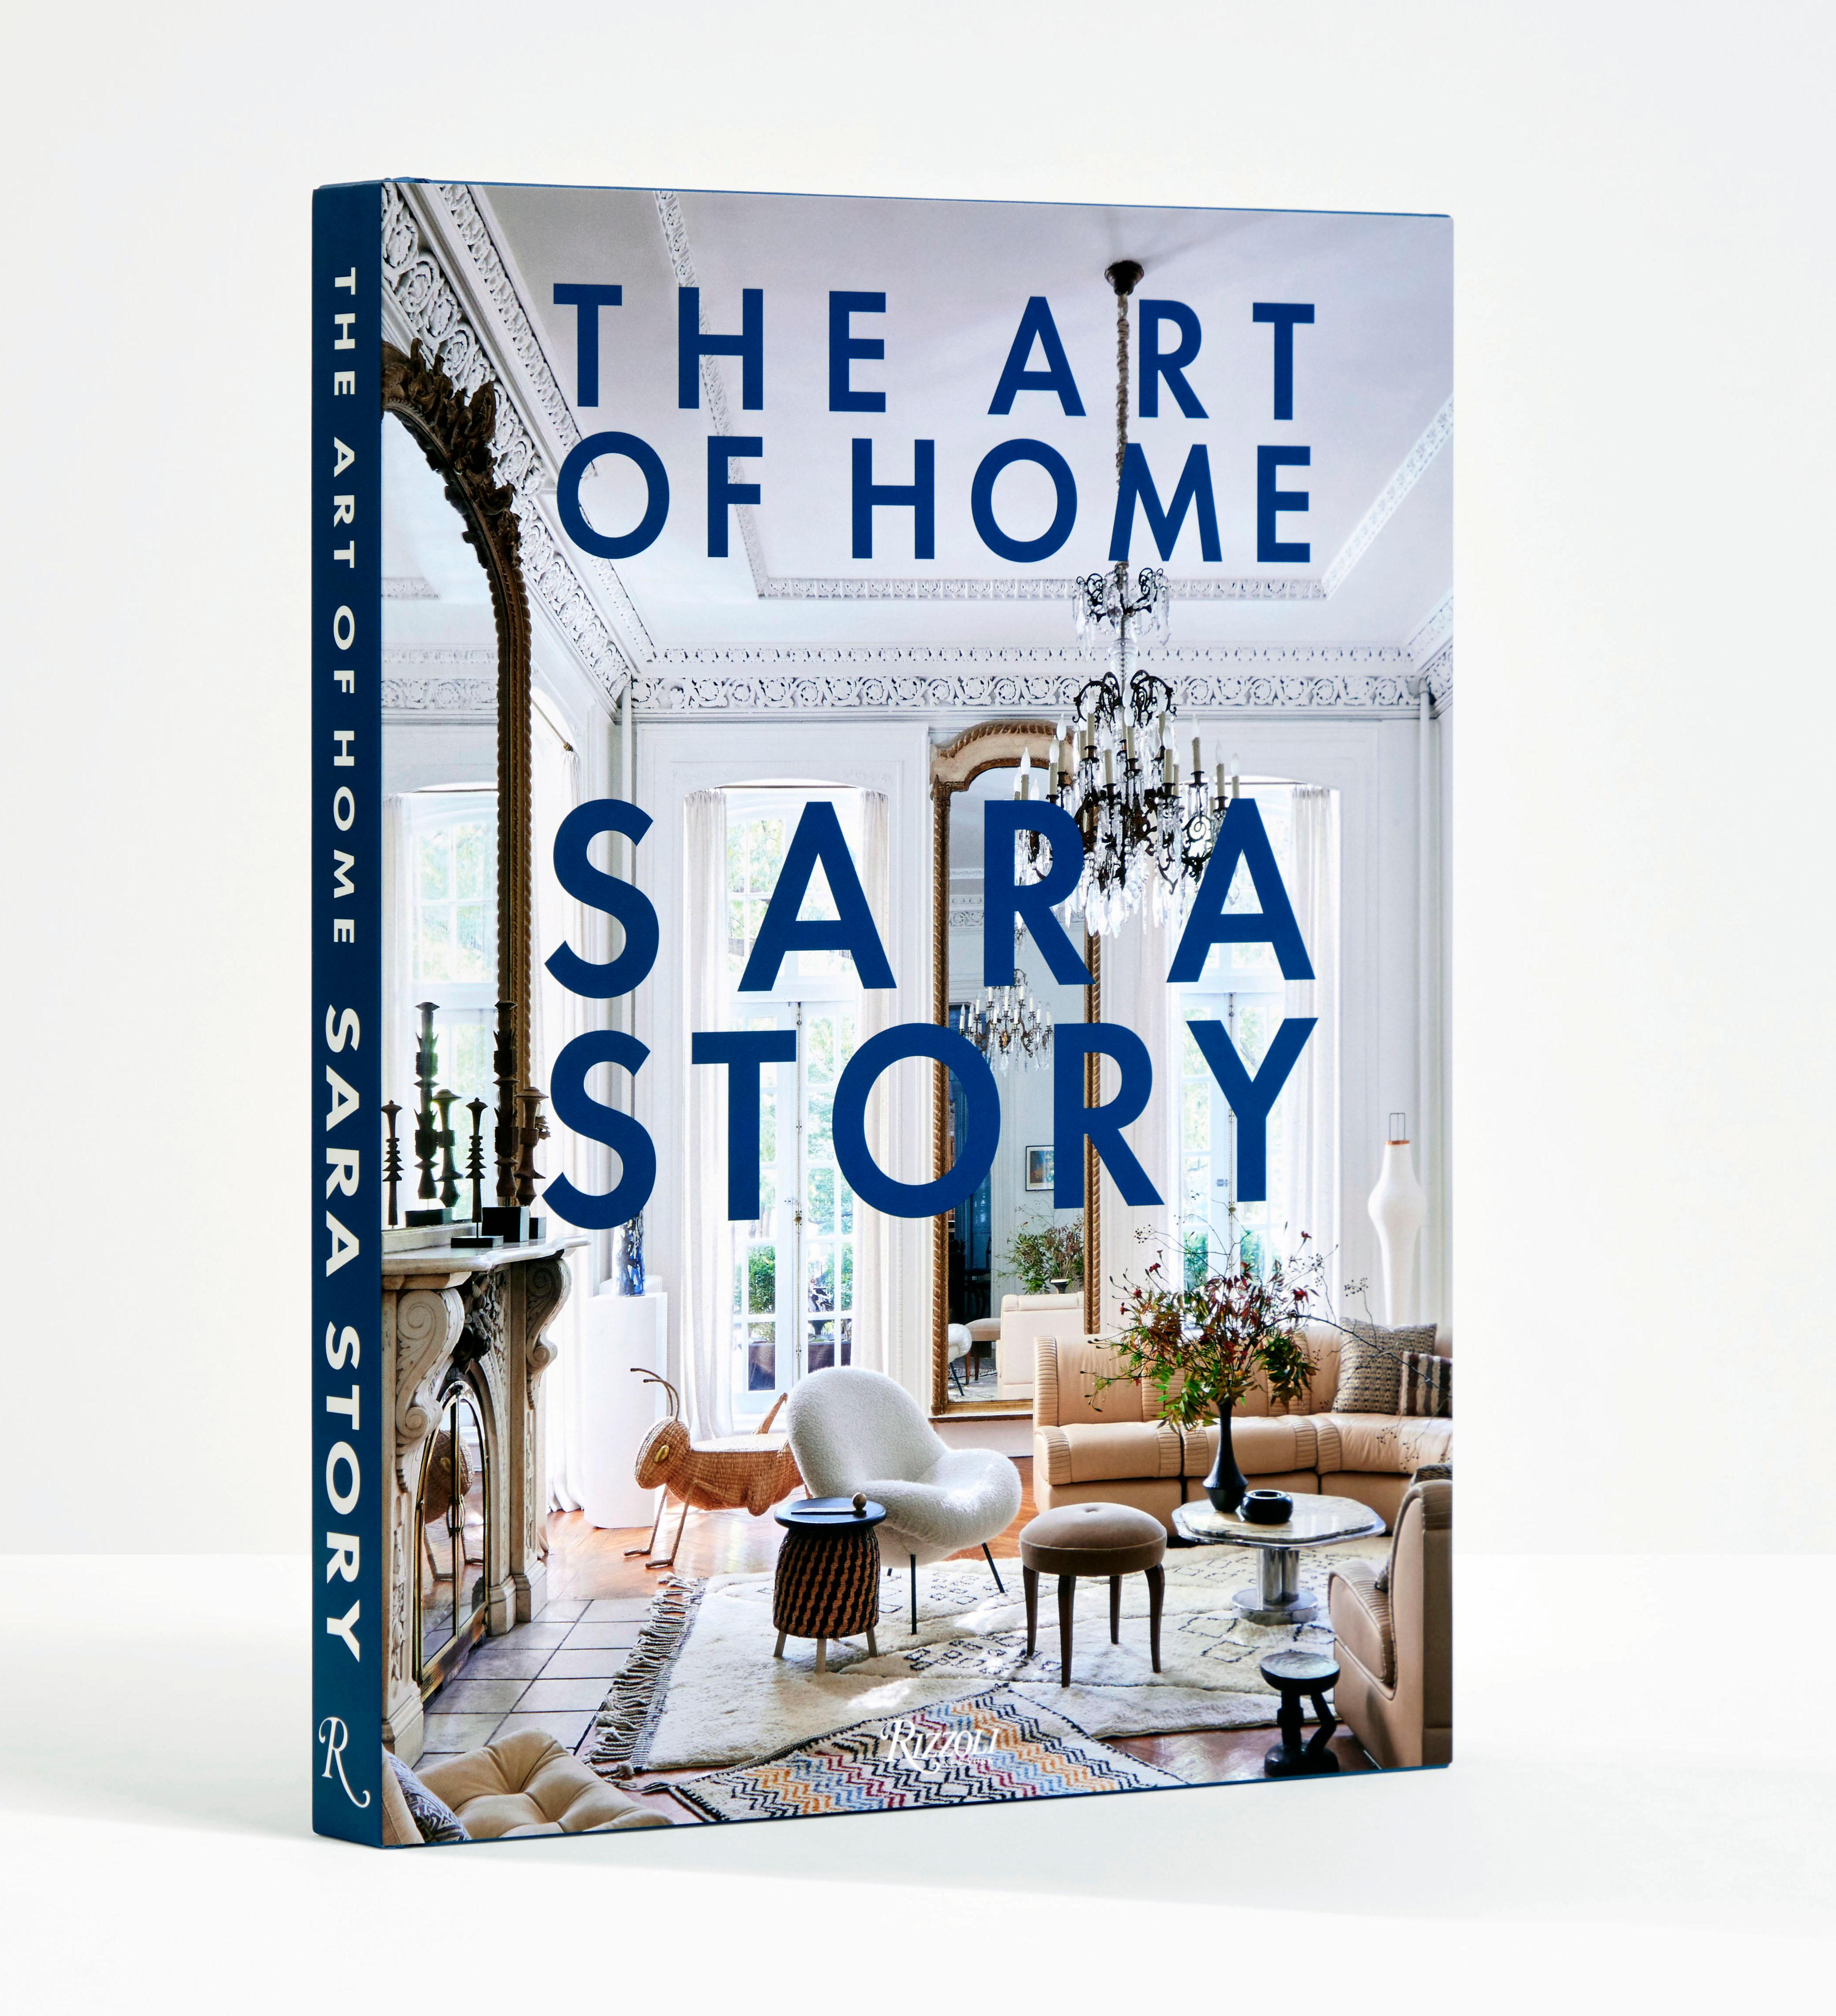 Le premier livre de la designer Sara Story, qui allie une sensibilité bohème mondiale à une passion pour l'art afin de créer des pièces épurées mais saisissantes qui concilient style et aventure.

Dotée d'un sens aigu de l'art et ayant passé son